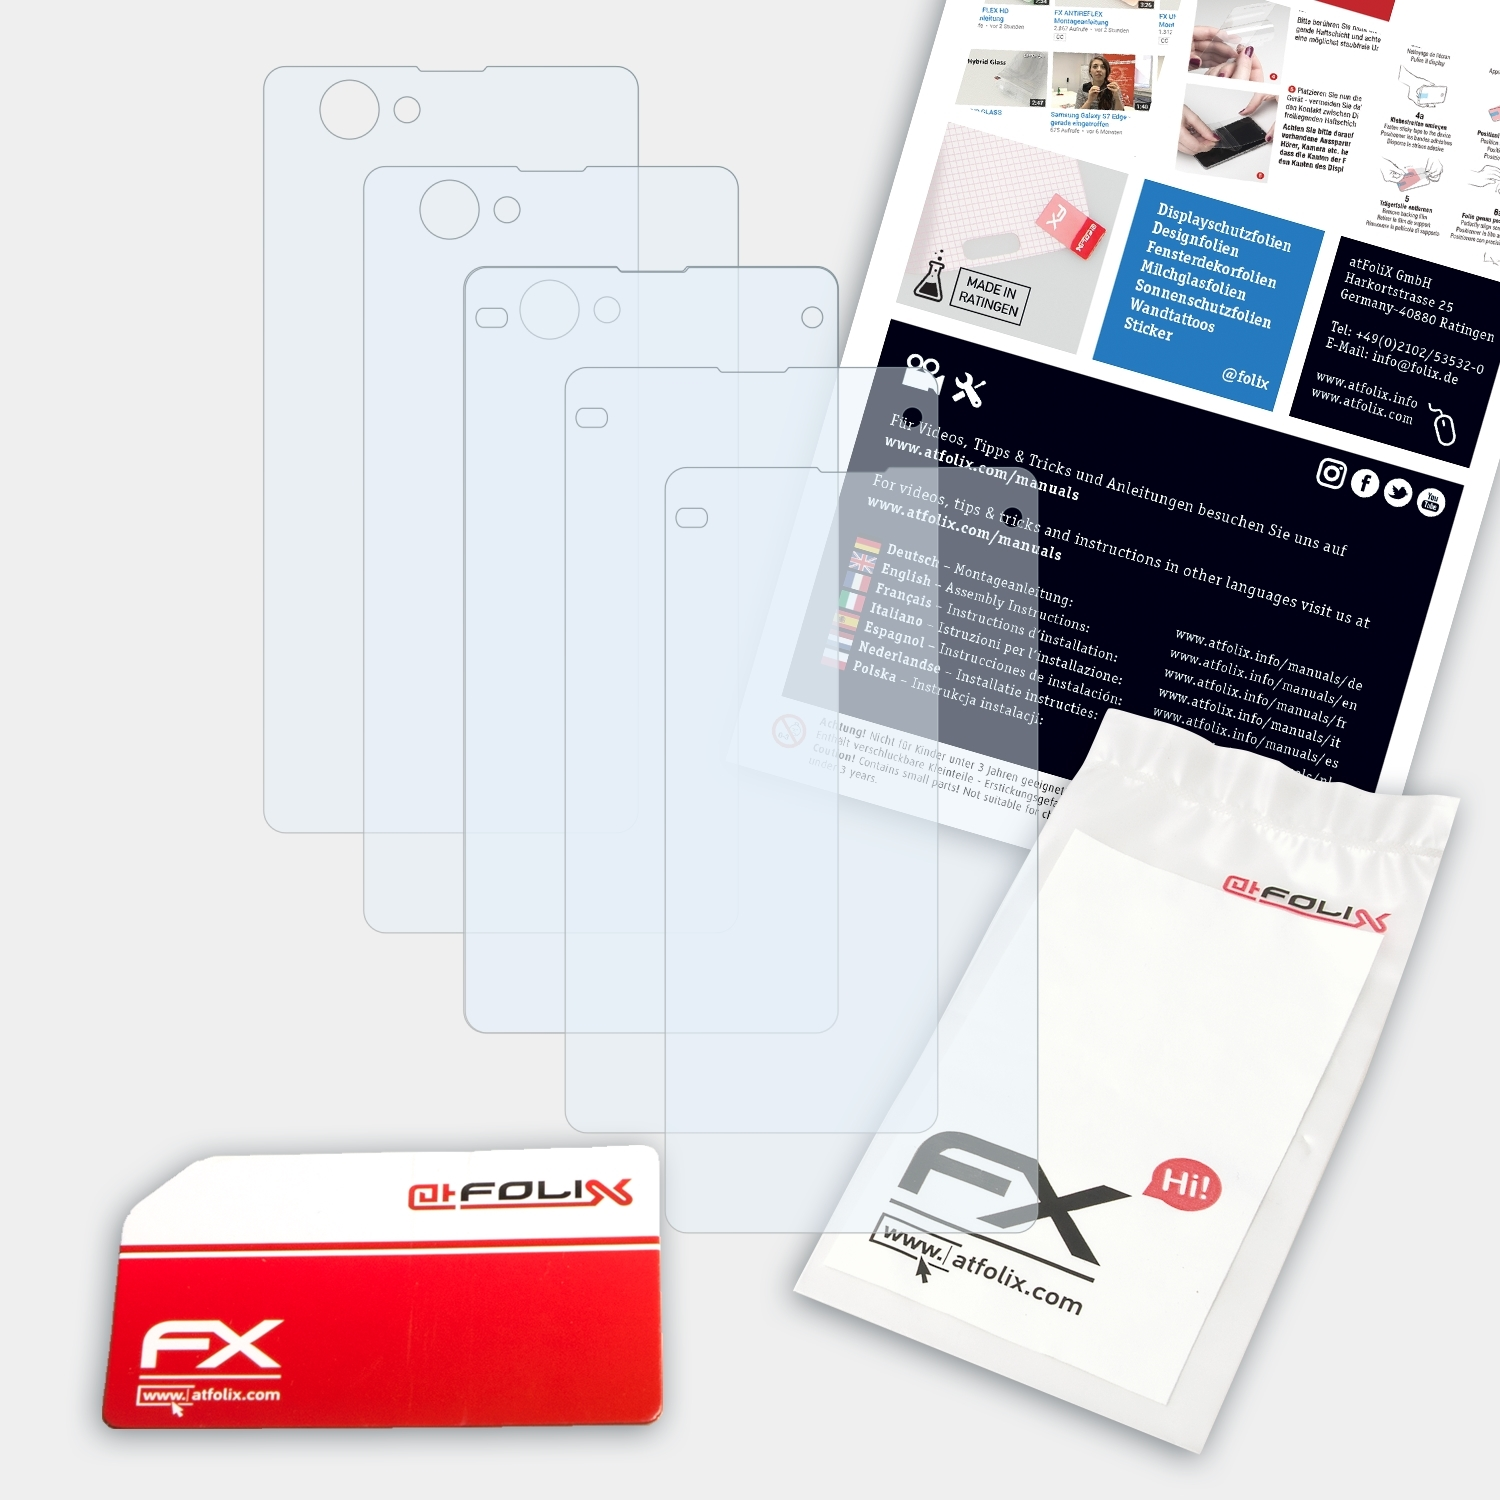 Xperia Compact) 3x Z1 Sony Displayschutz(für FX-Clear ATFOLIX